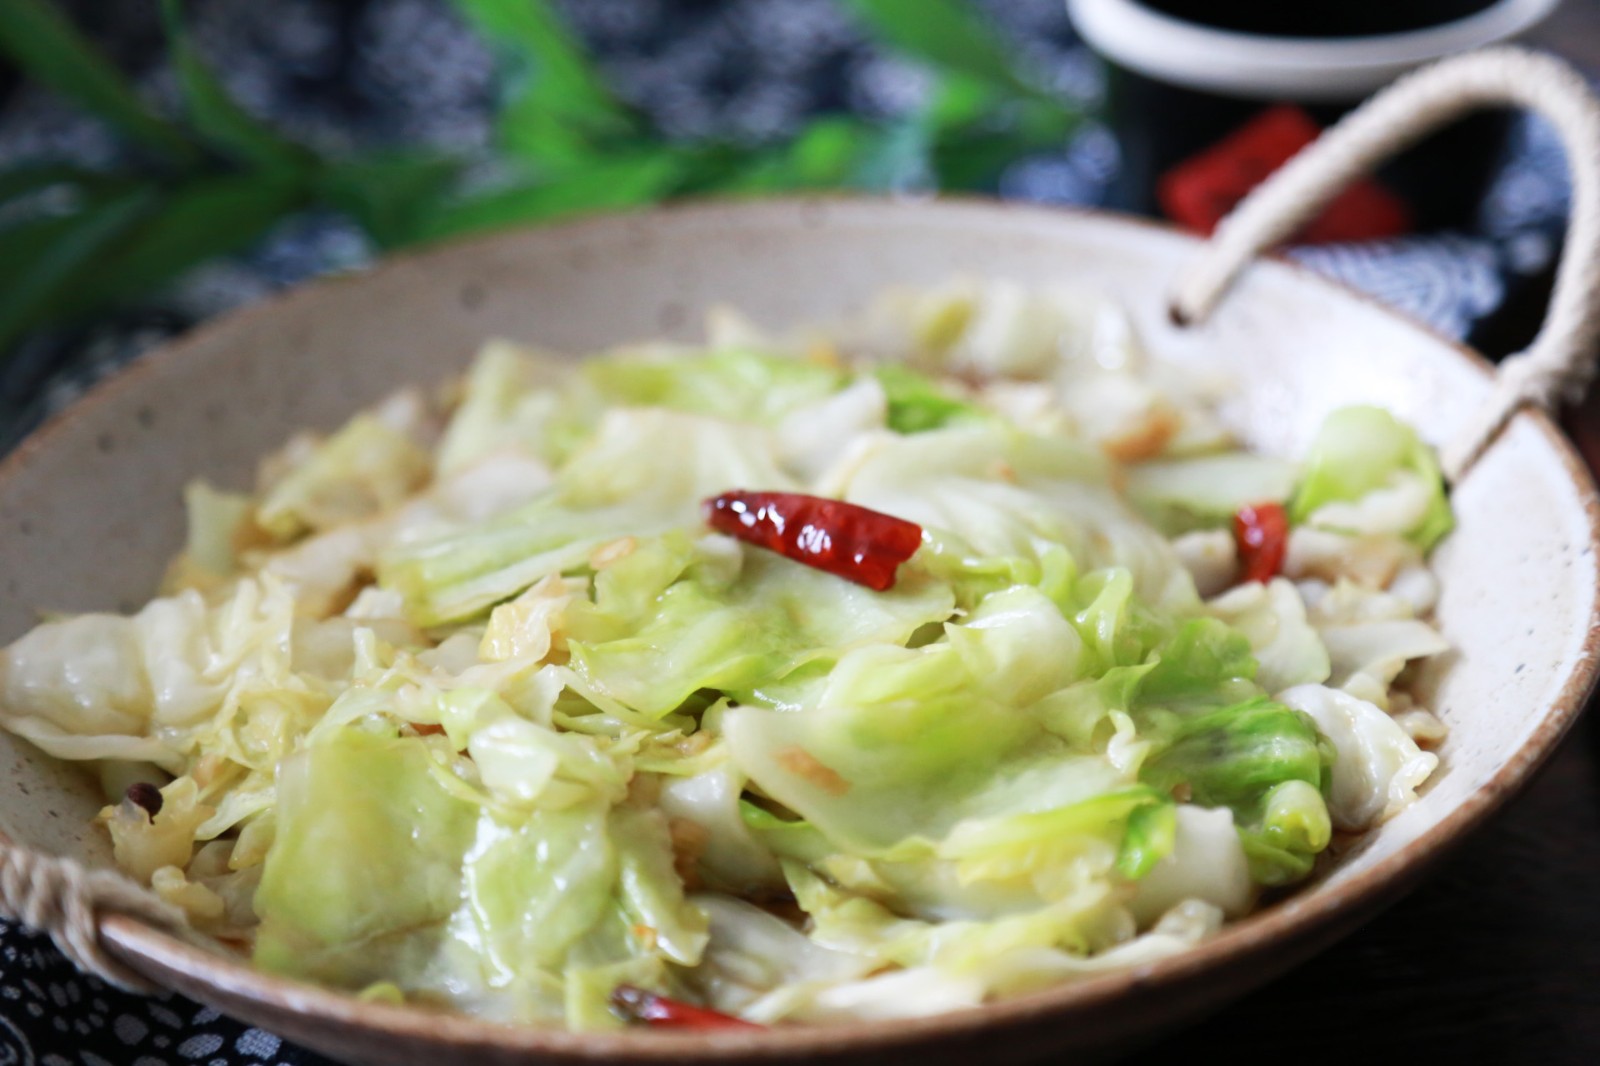 原创川菜中的一道家常菜,制作简单,酸甜微辣,开胃下饭,家人都爱吃